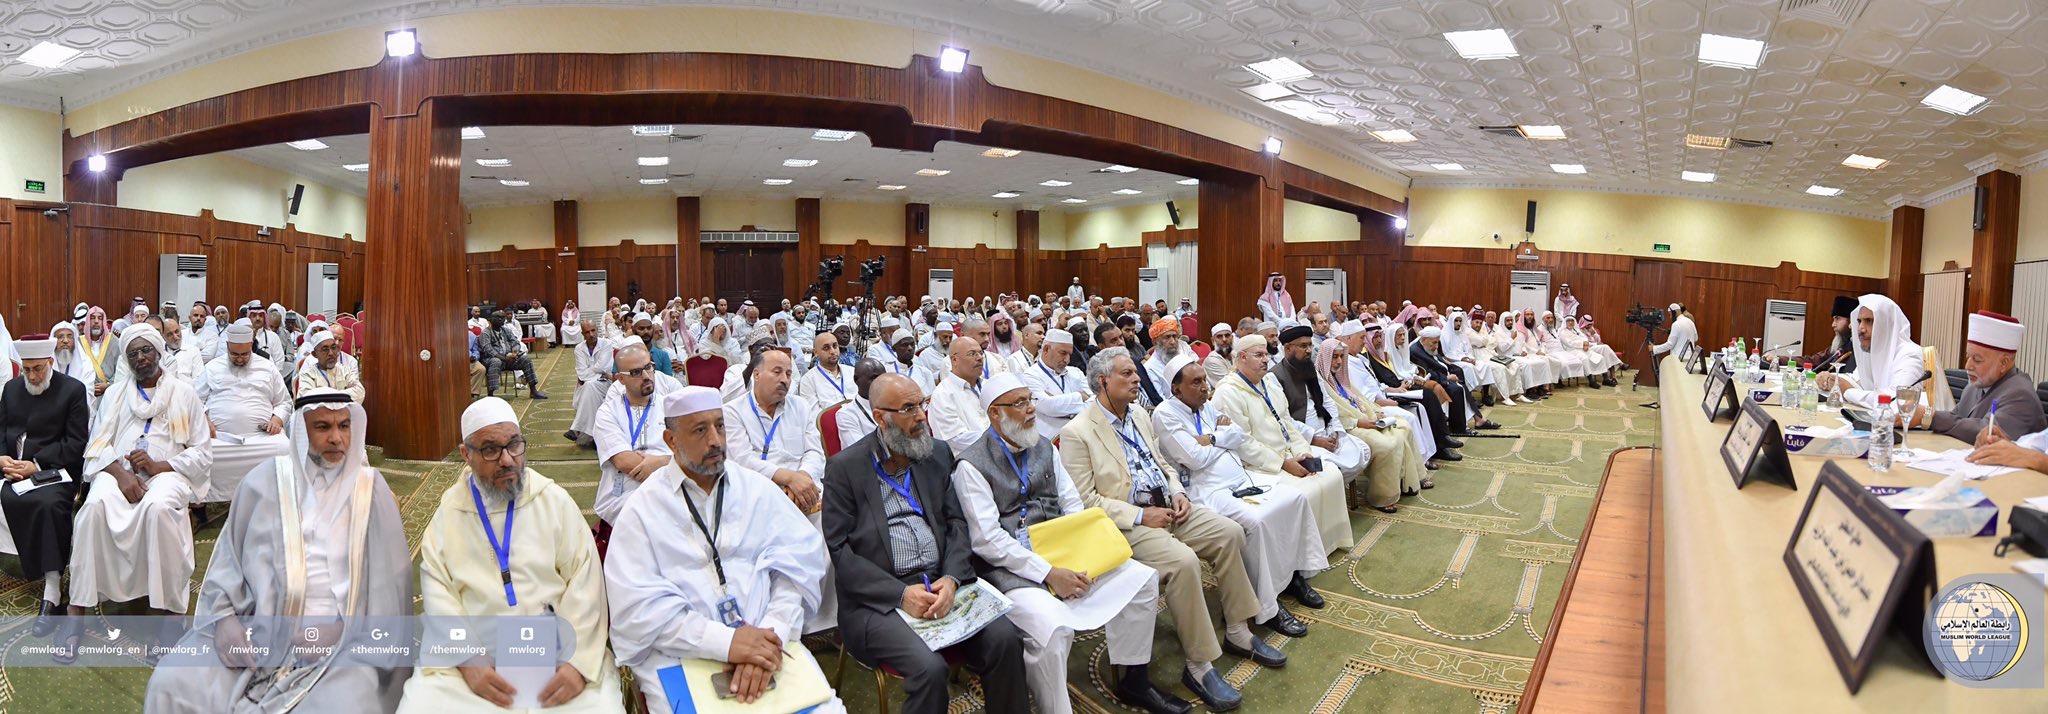 ‏كوكبةٌ من الحضور العلمائي الكبير لملتقى مؤتمر الرابطة في حج هذا العام بمشعر منىٰ الطاهر، مستعرضاً قيم الوسطية والتسامح في الإسلام